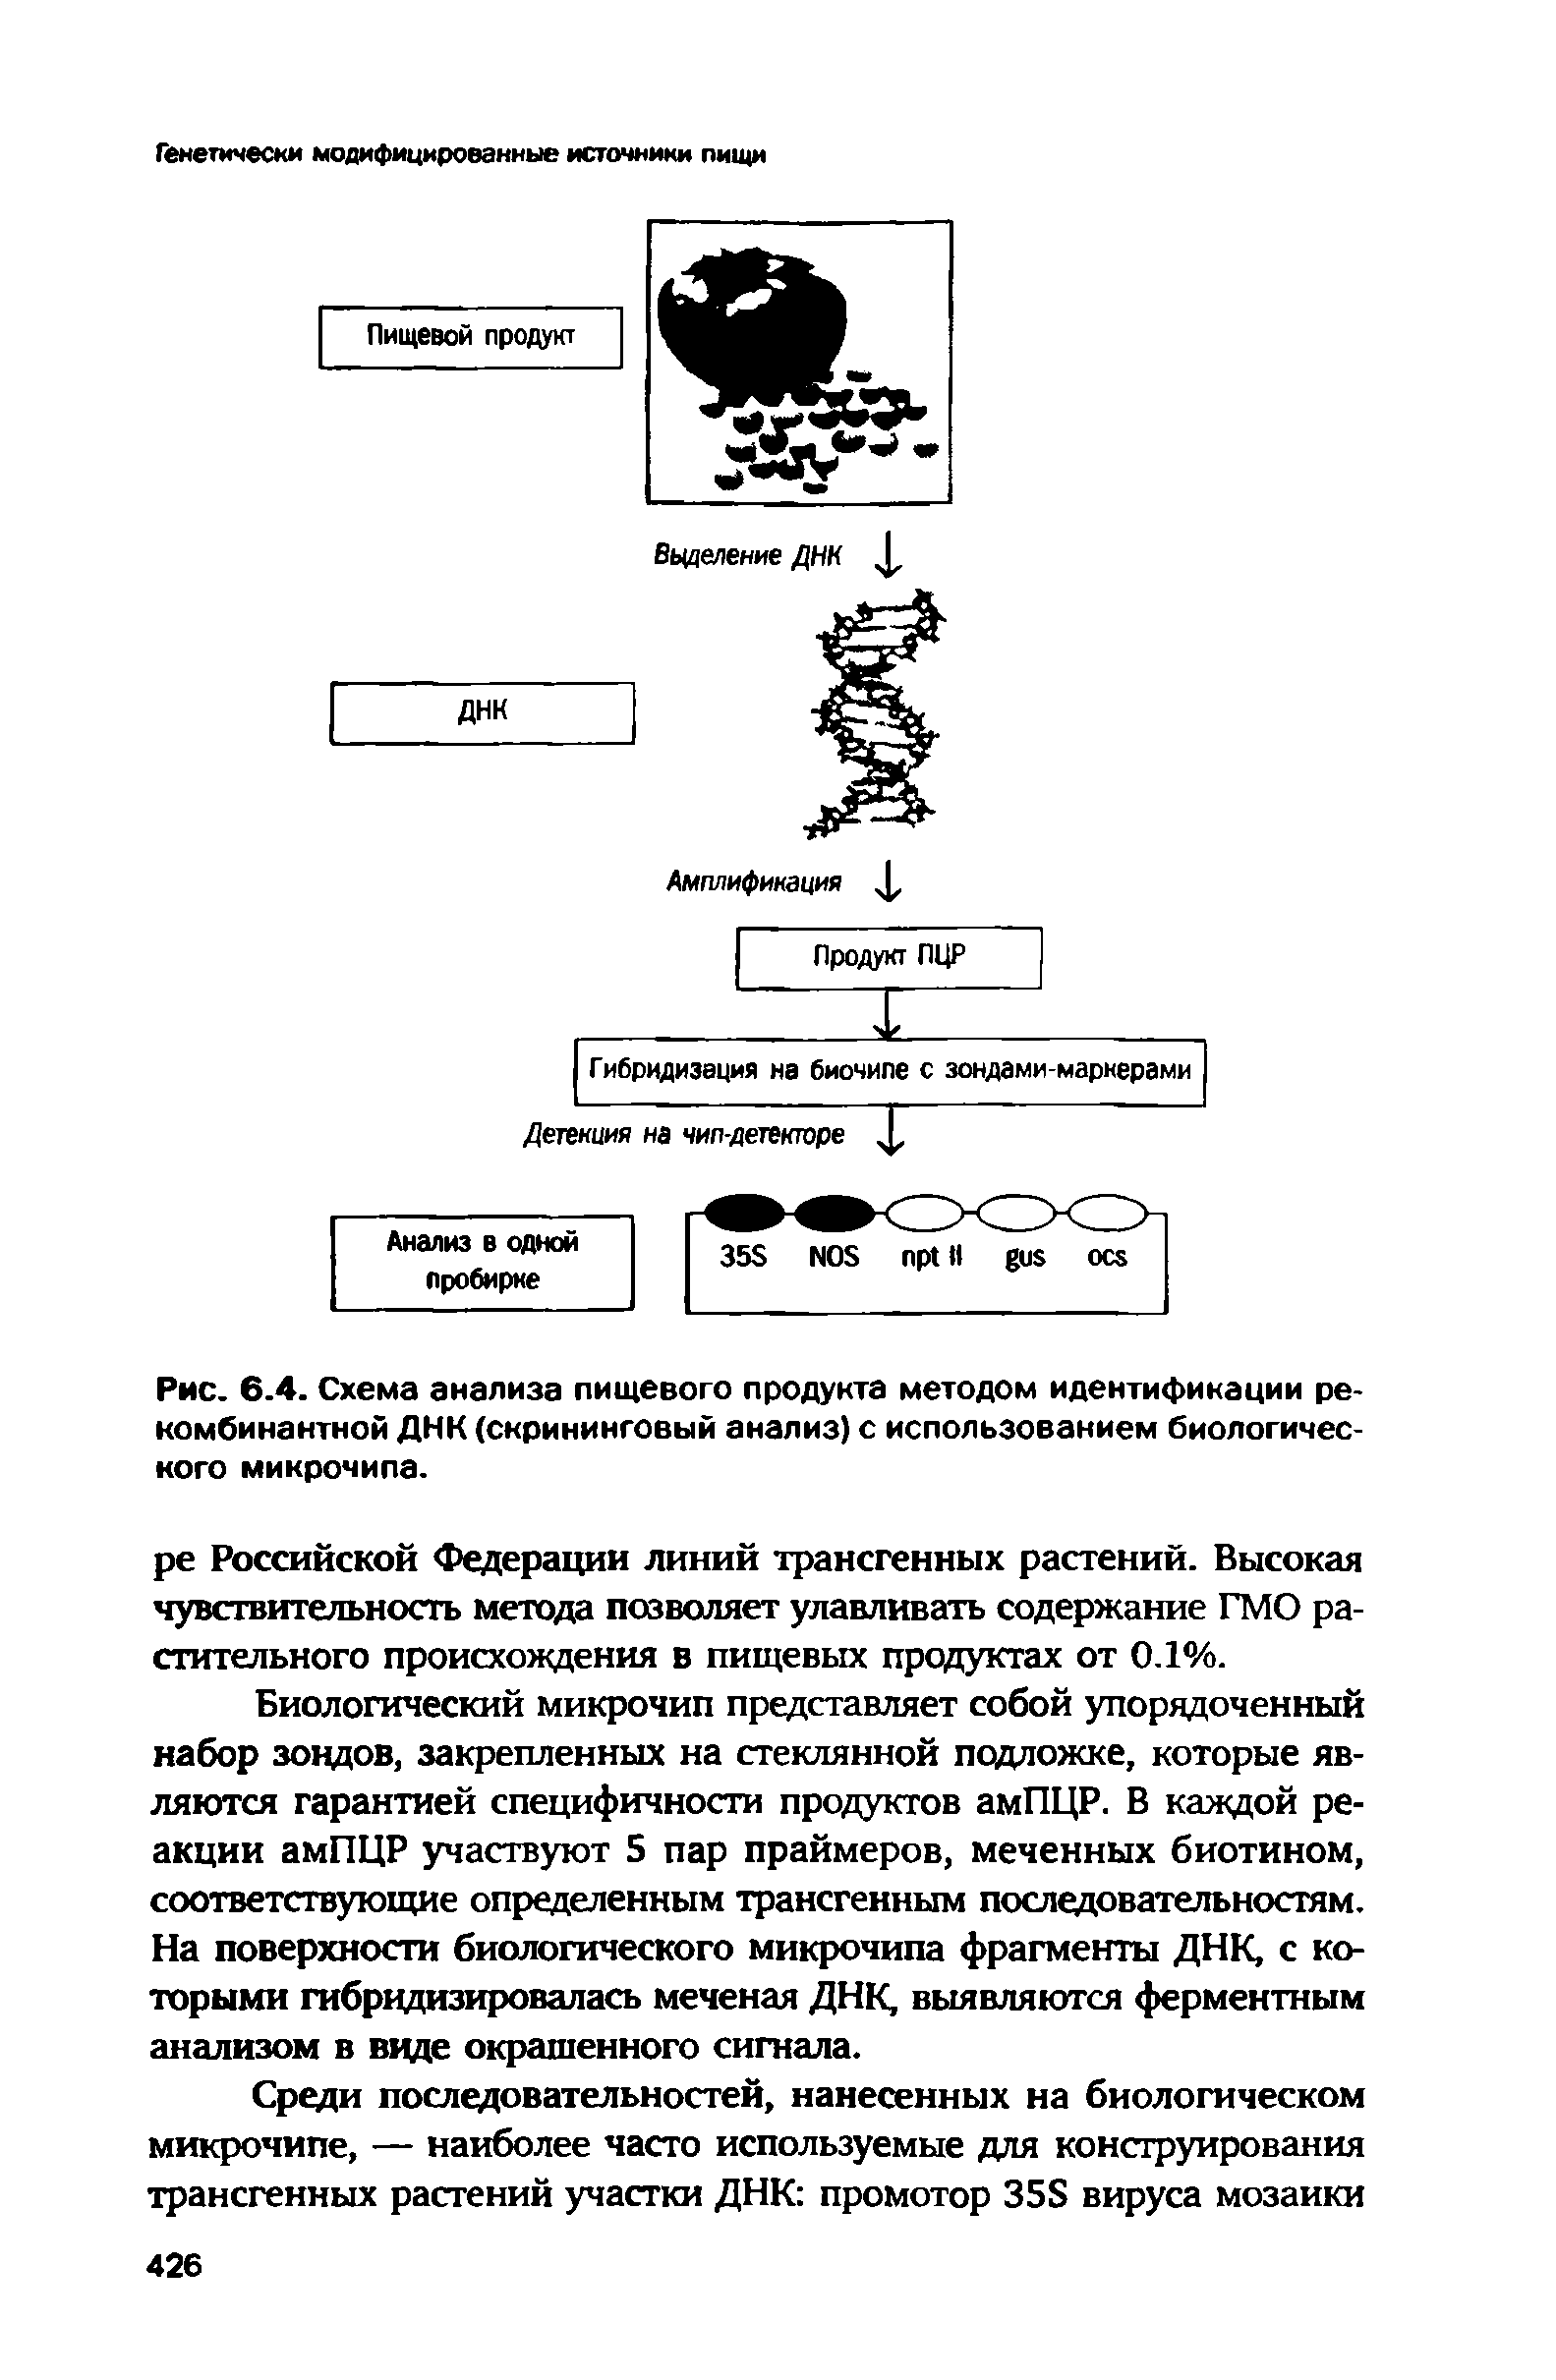 Рис. 6.4. Схема анализа пищевого продукта методом идентификации рекомбинантной ДНК (скрининговый анализ) с использованием биологического микрочипа.